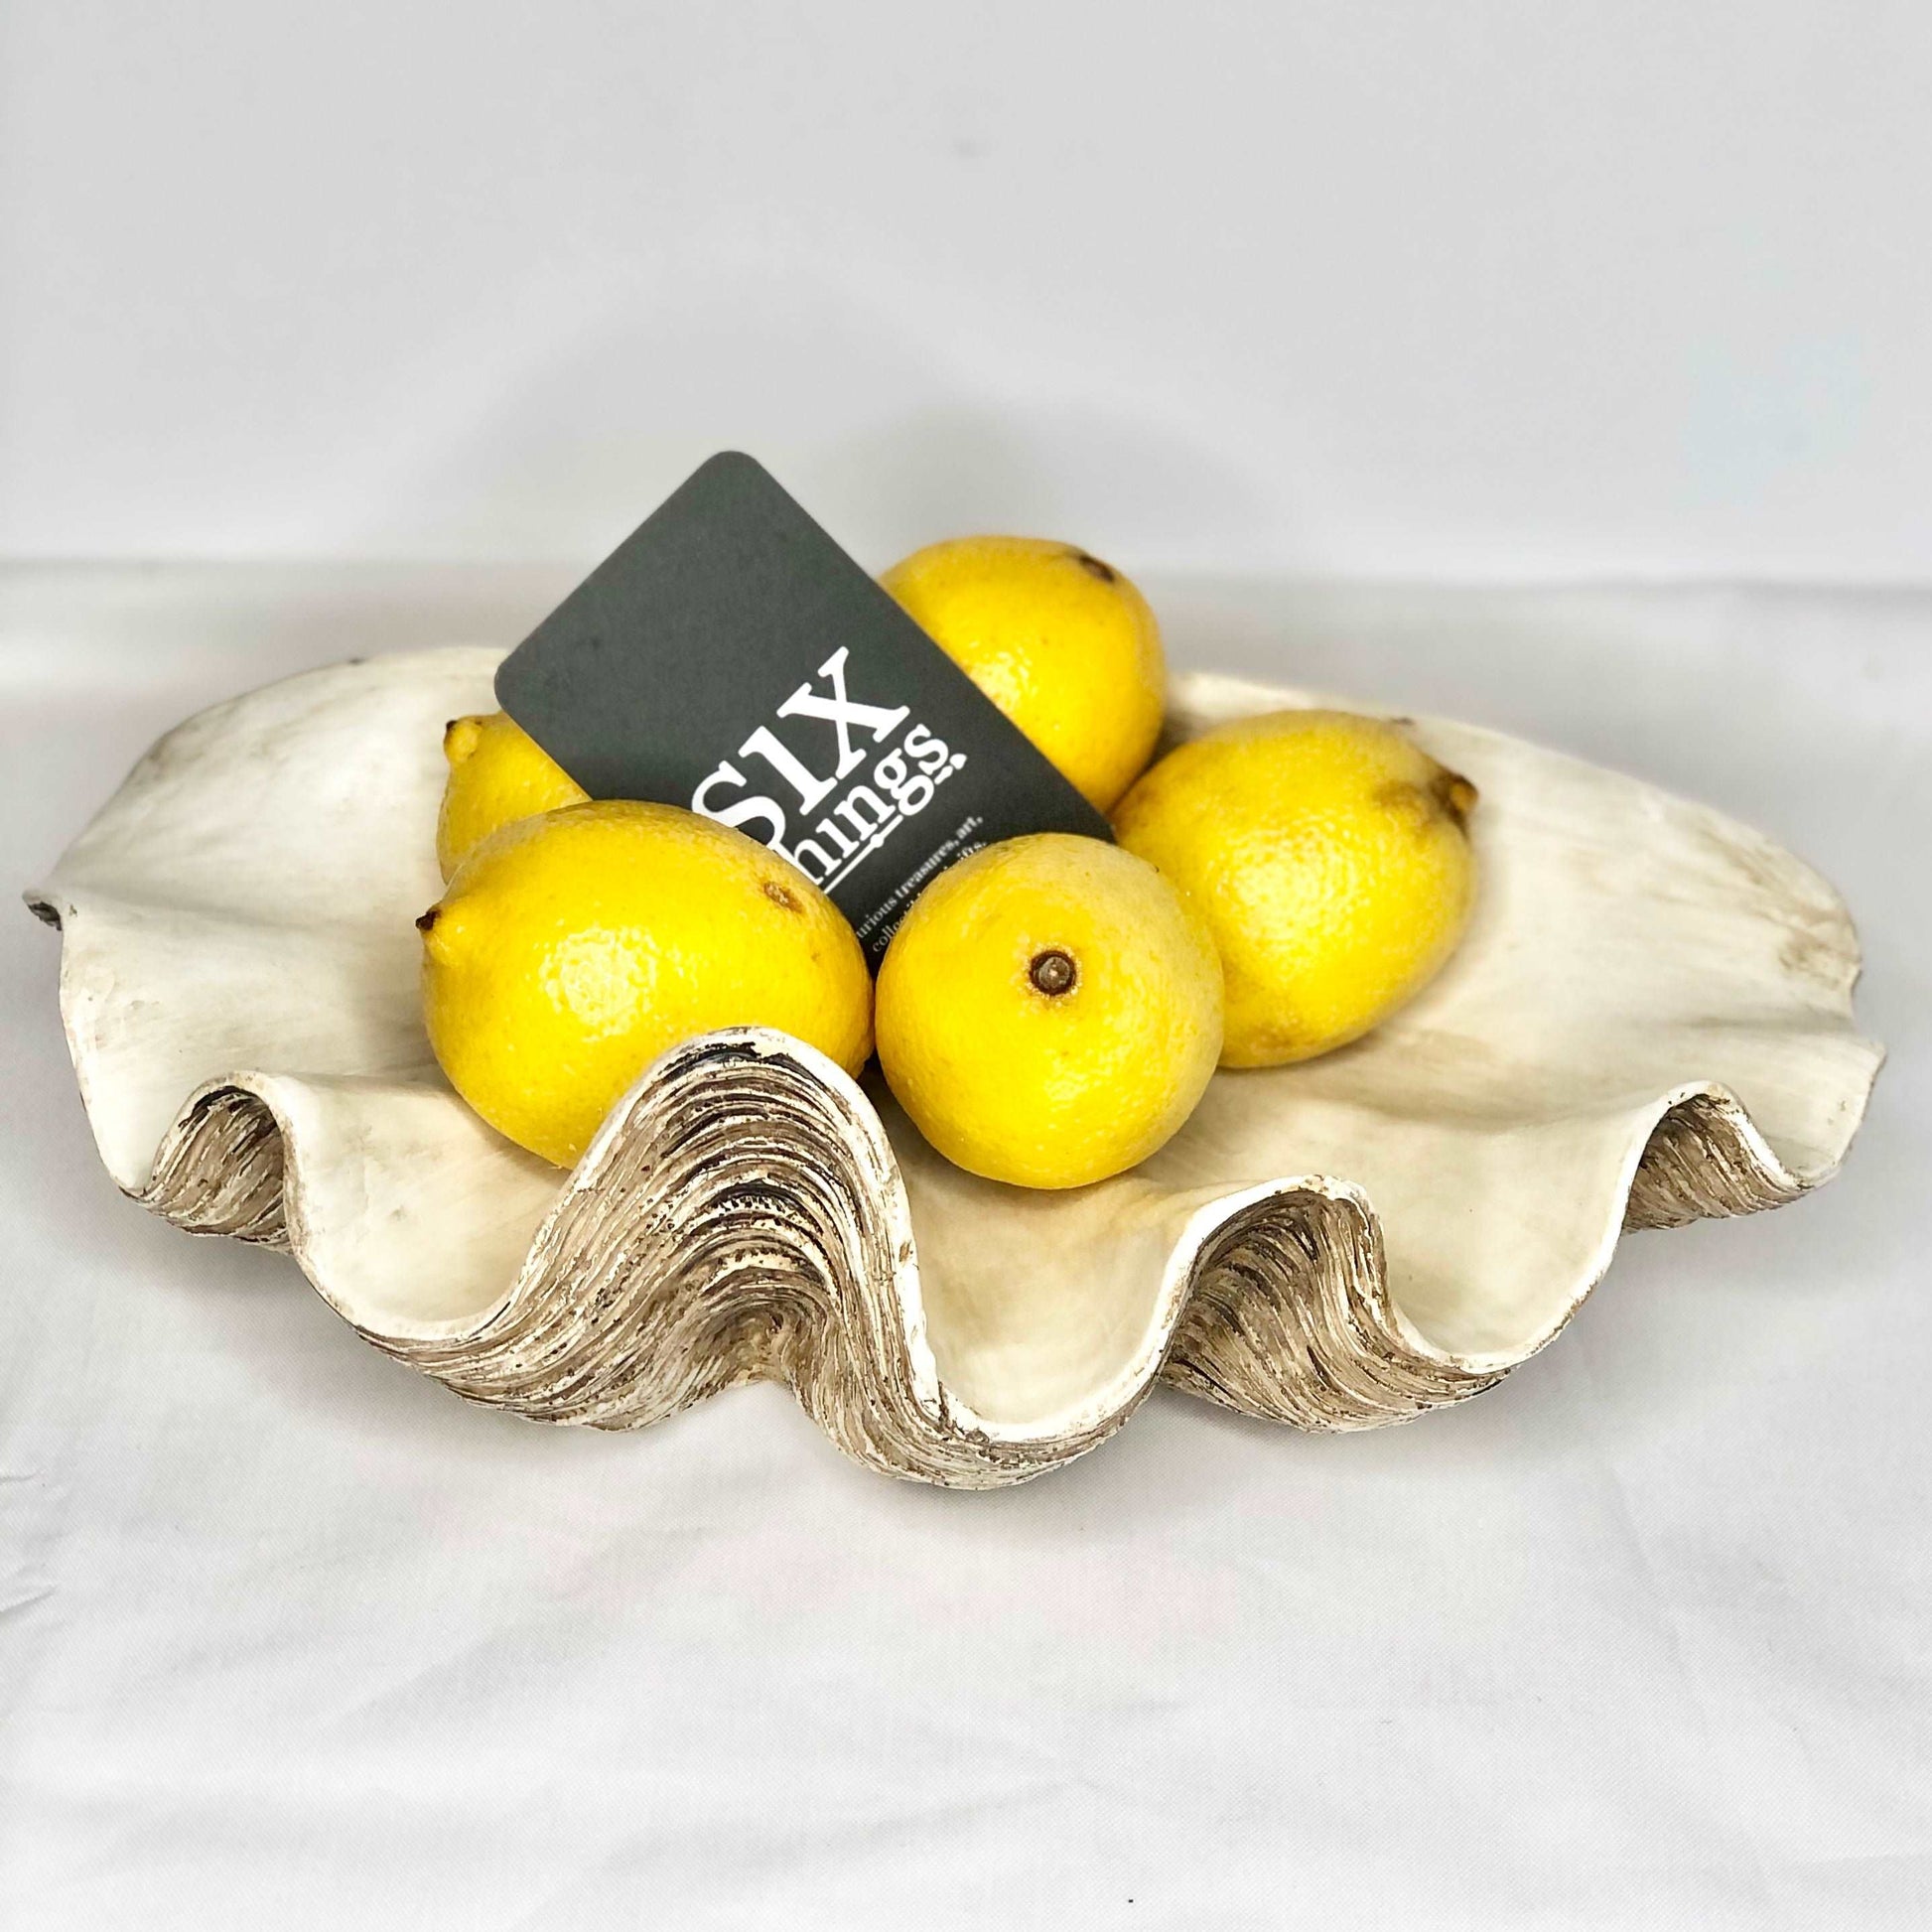 Coastal decor clam shell bowl / tray